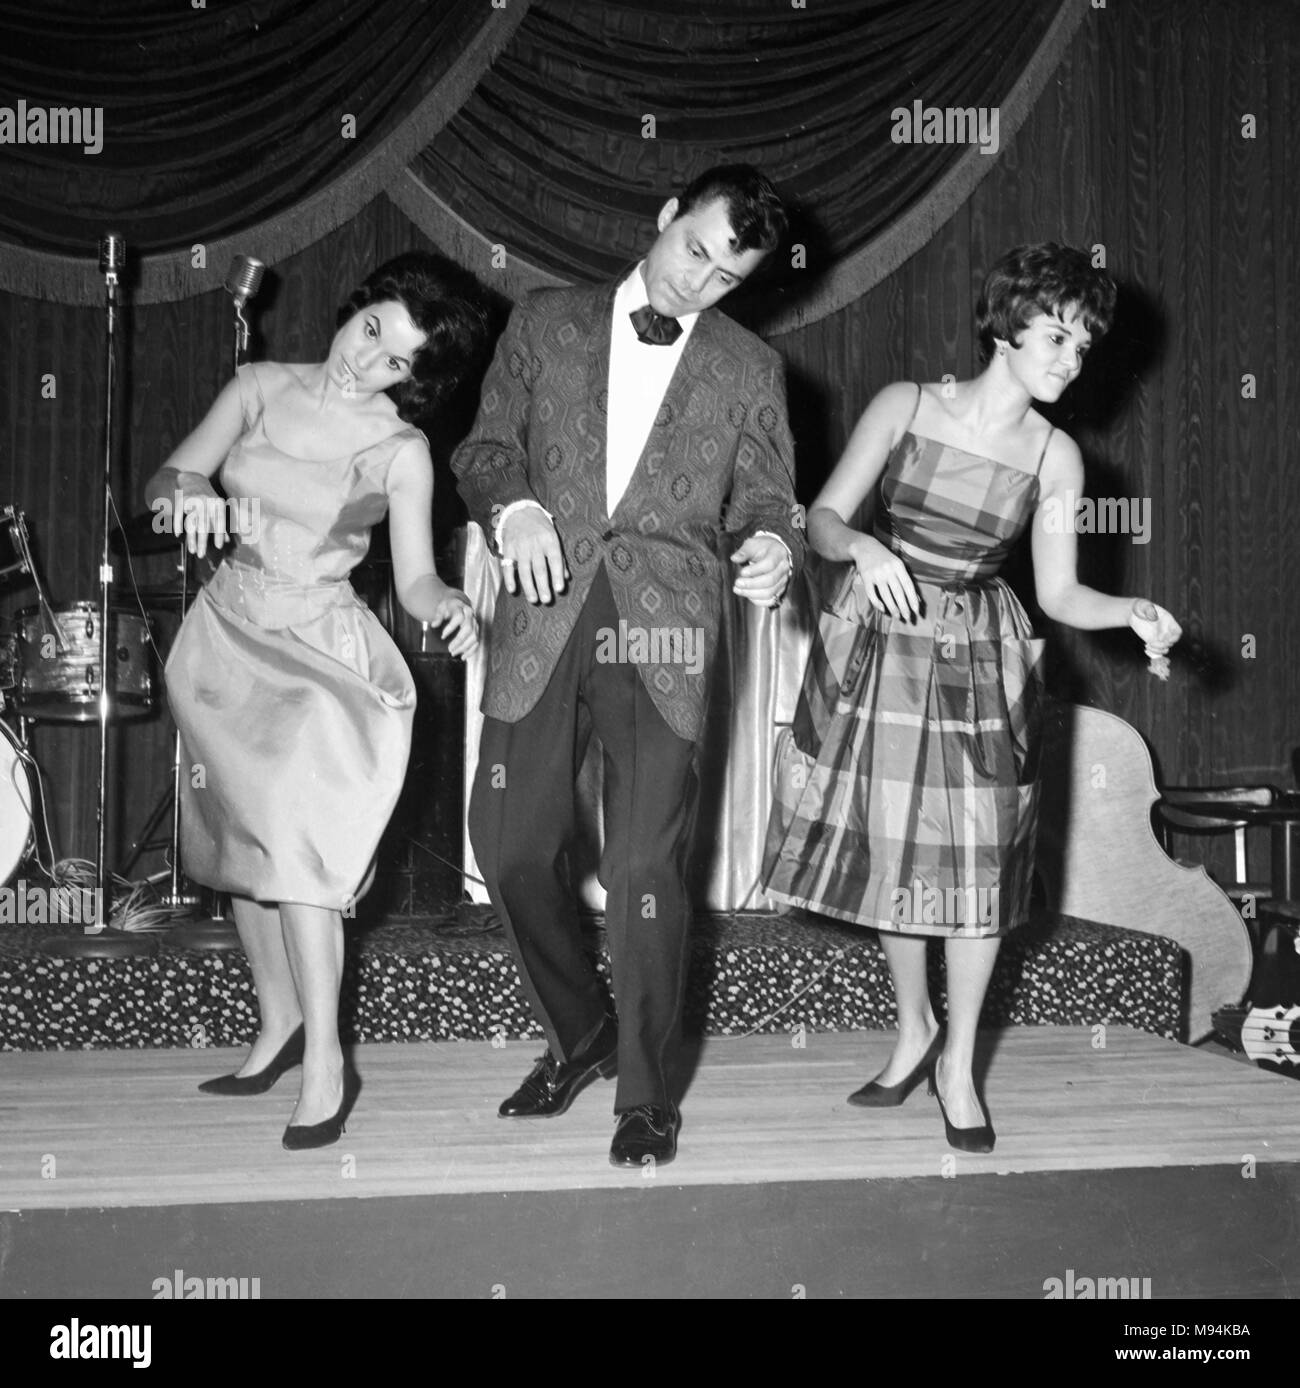 Trio démontre la new dance craze de la purée de pommes de terre, ca. 1961. Banque D'Images